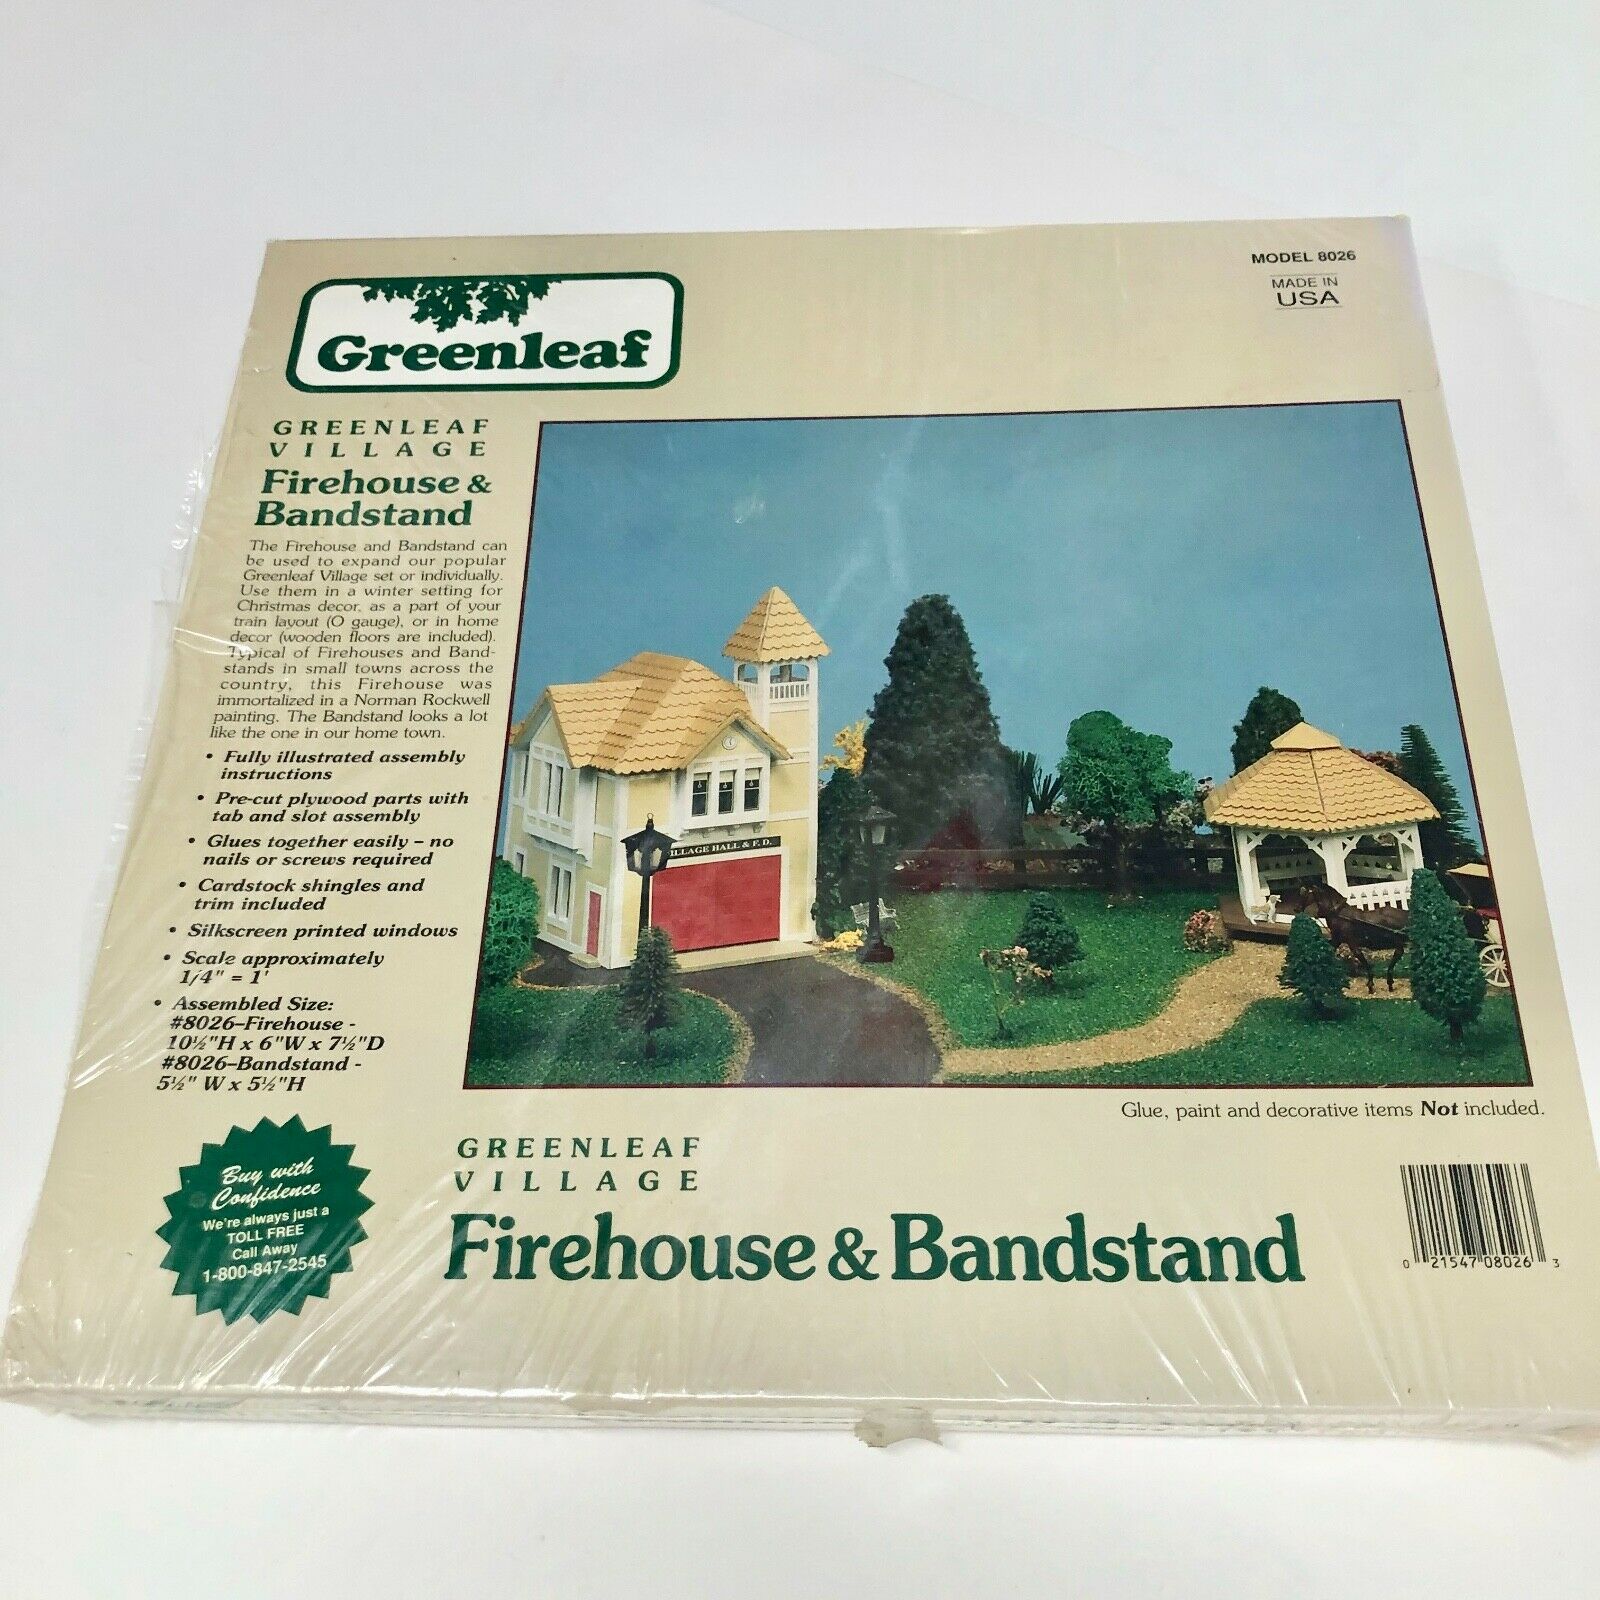 Greenleaf Village Firehouse & Bandstand Model 8026 New Sealed